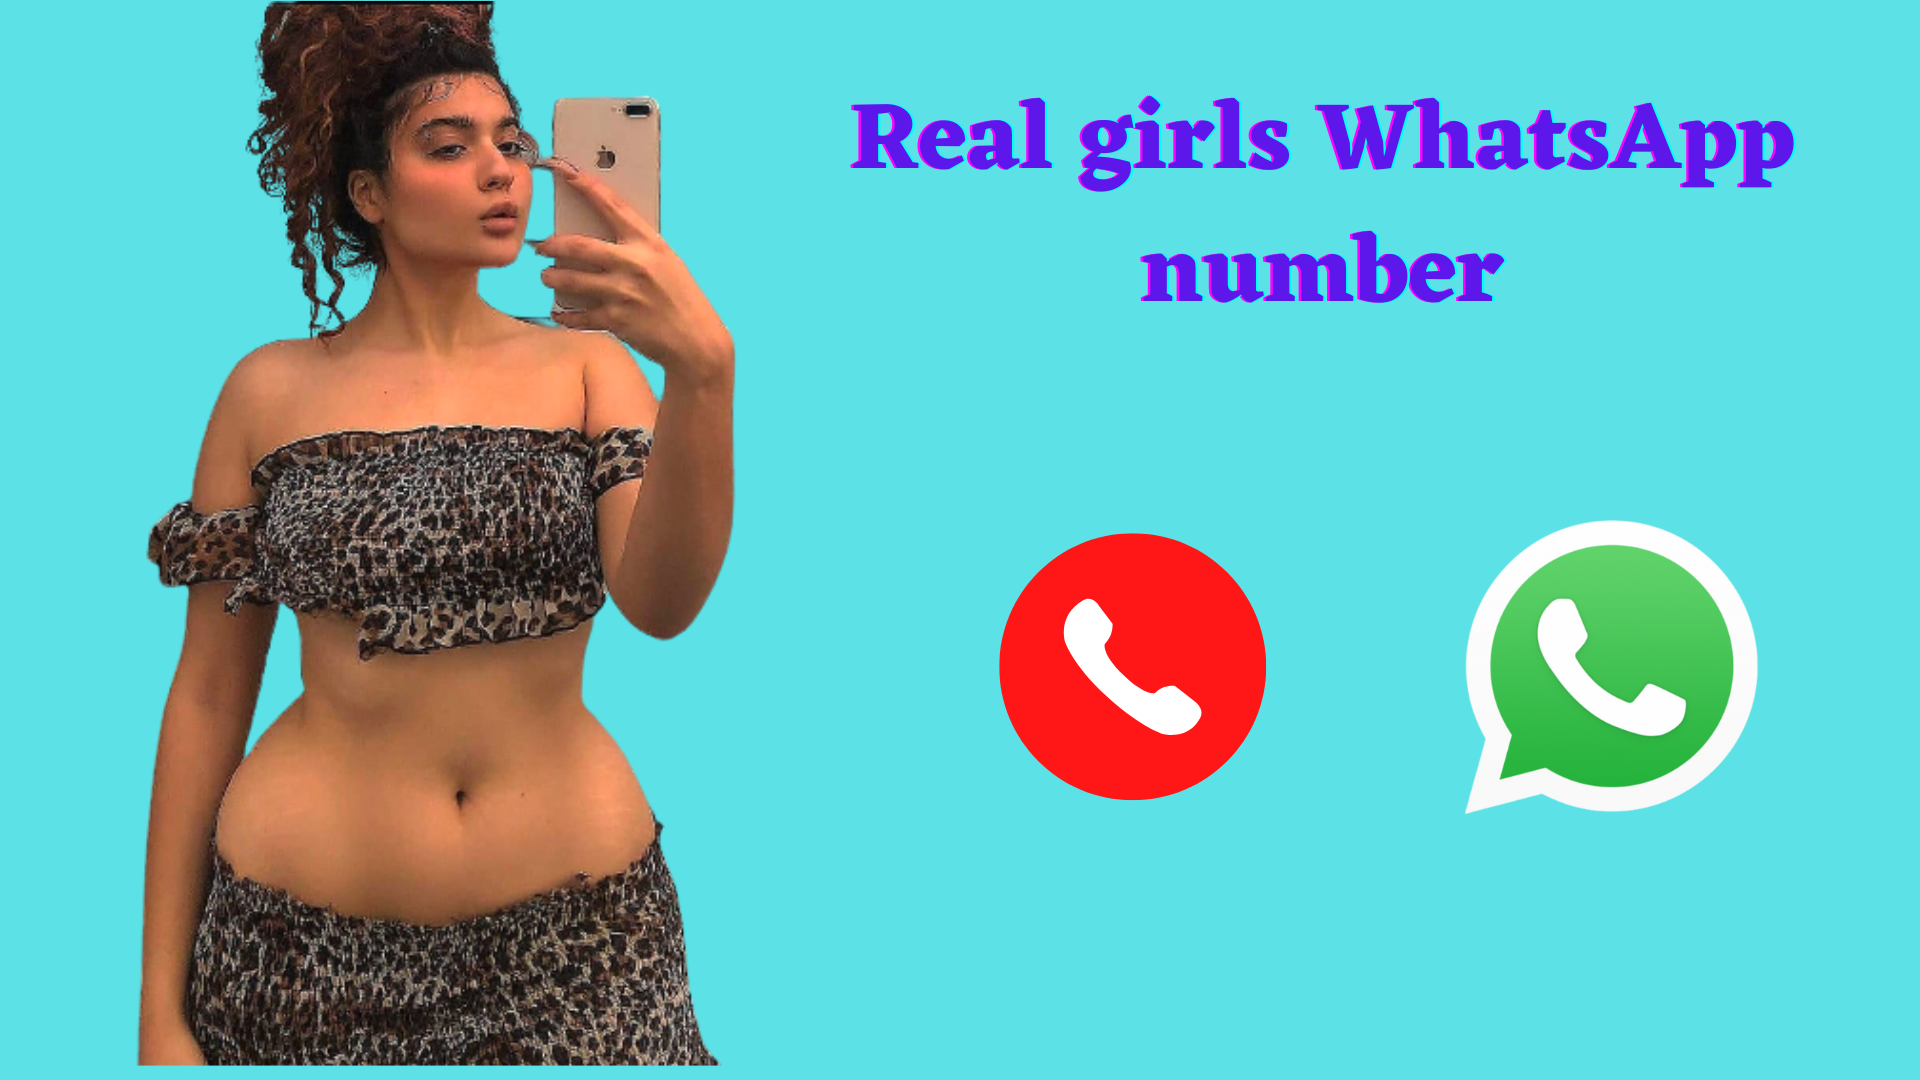 Karnataka Sex Girls Whatsapp Number - 31 Sexy Real Girls WhatsApp Number For Sex